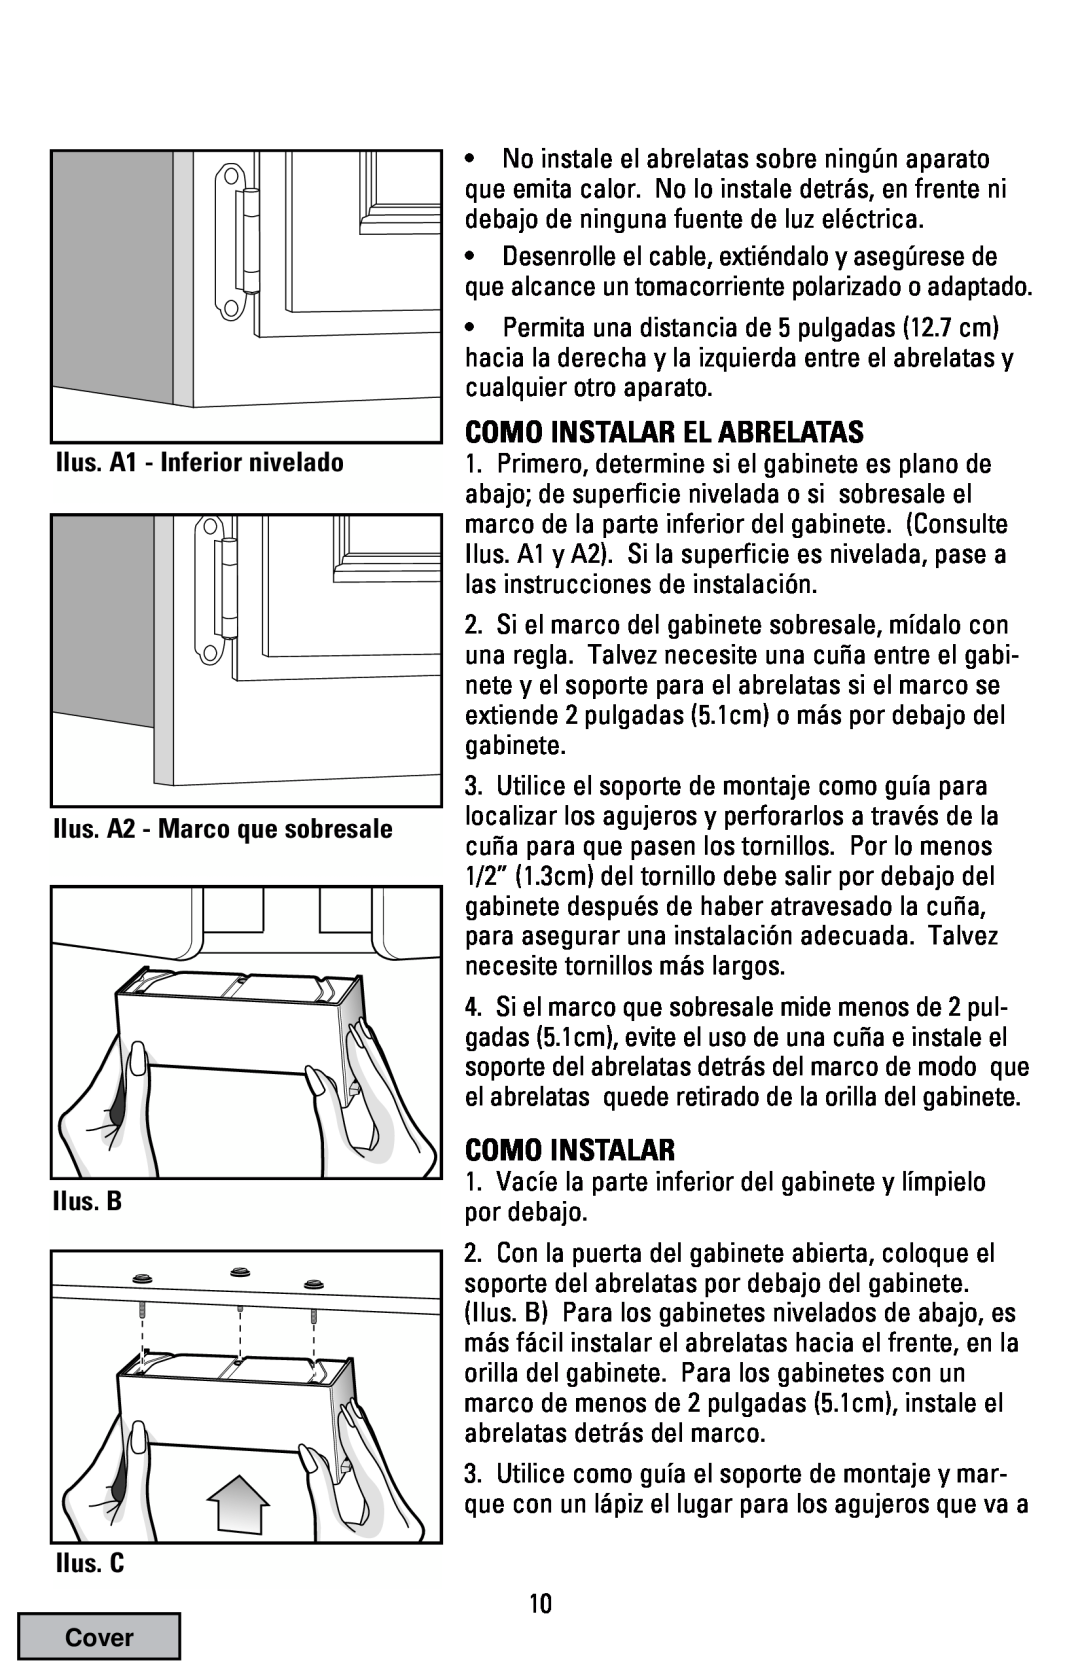 Black & Decker EC70 Como Instalar El Abrelatas, Ilus. A1 - Inferior nivelado Ilus. A2 - Marco que sobresale Ilus. B, Cover 